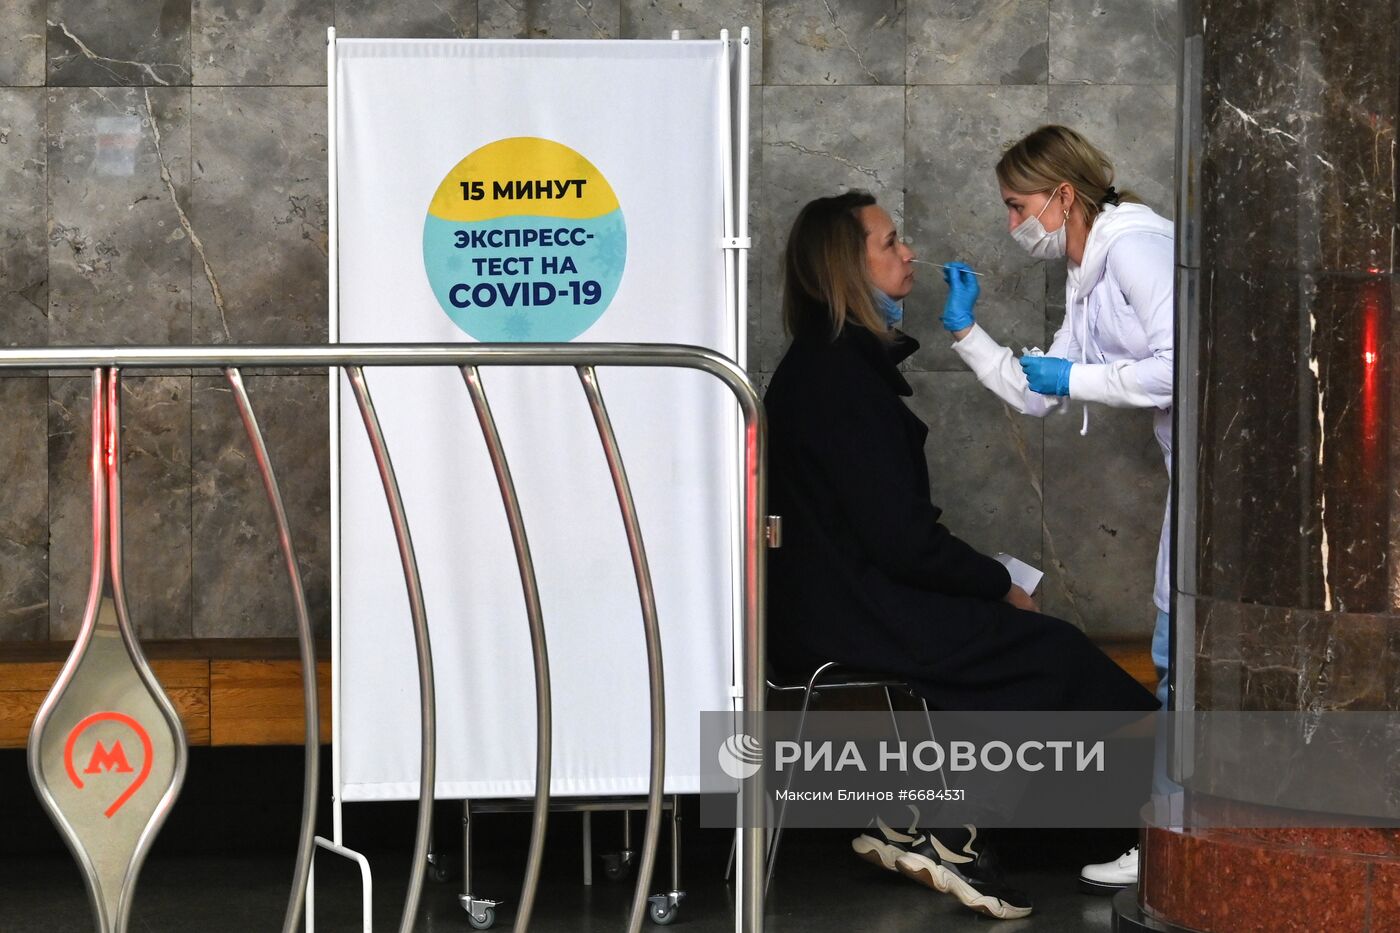 В метро Москвы открылись пункты экспресс-тестирования на COVID-19